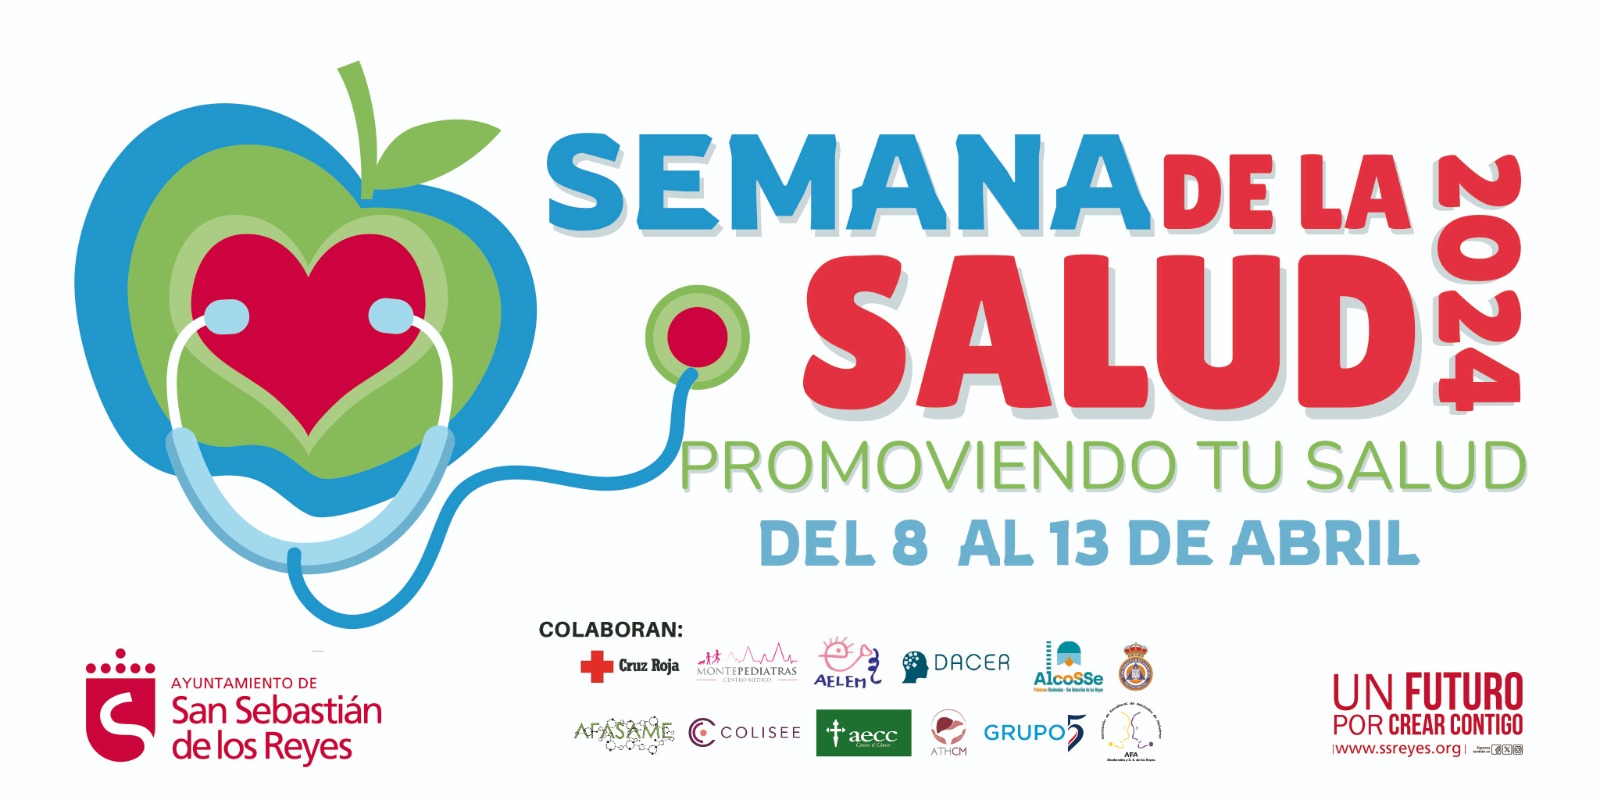 San Sebastián de los Reyes, en colaboración con diversas entidades y asociaciones locales, organiza la Semana de la Salud